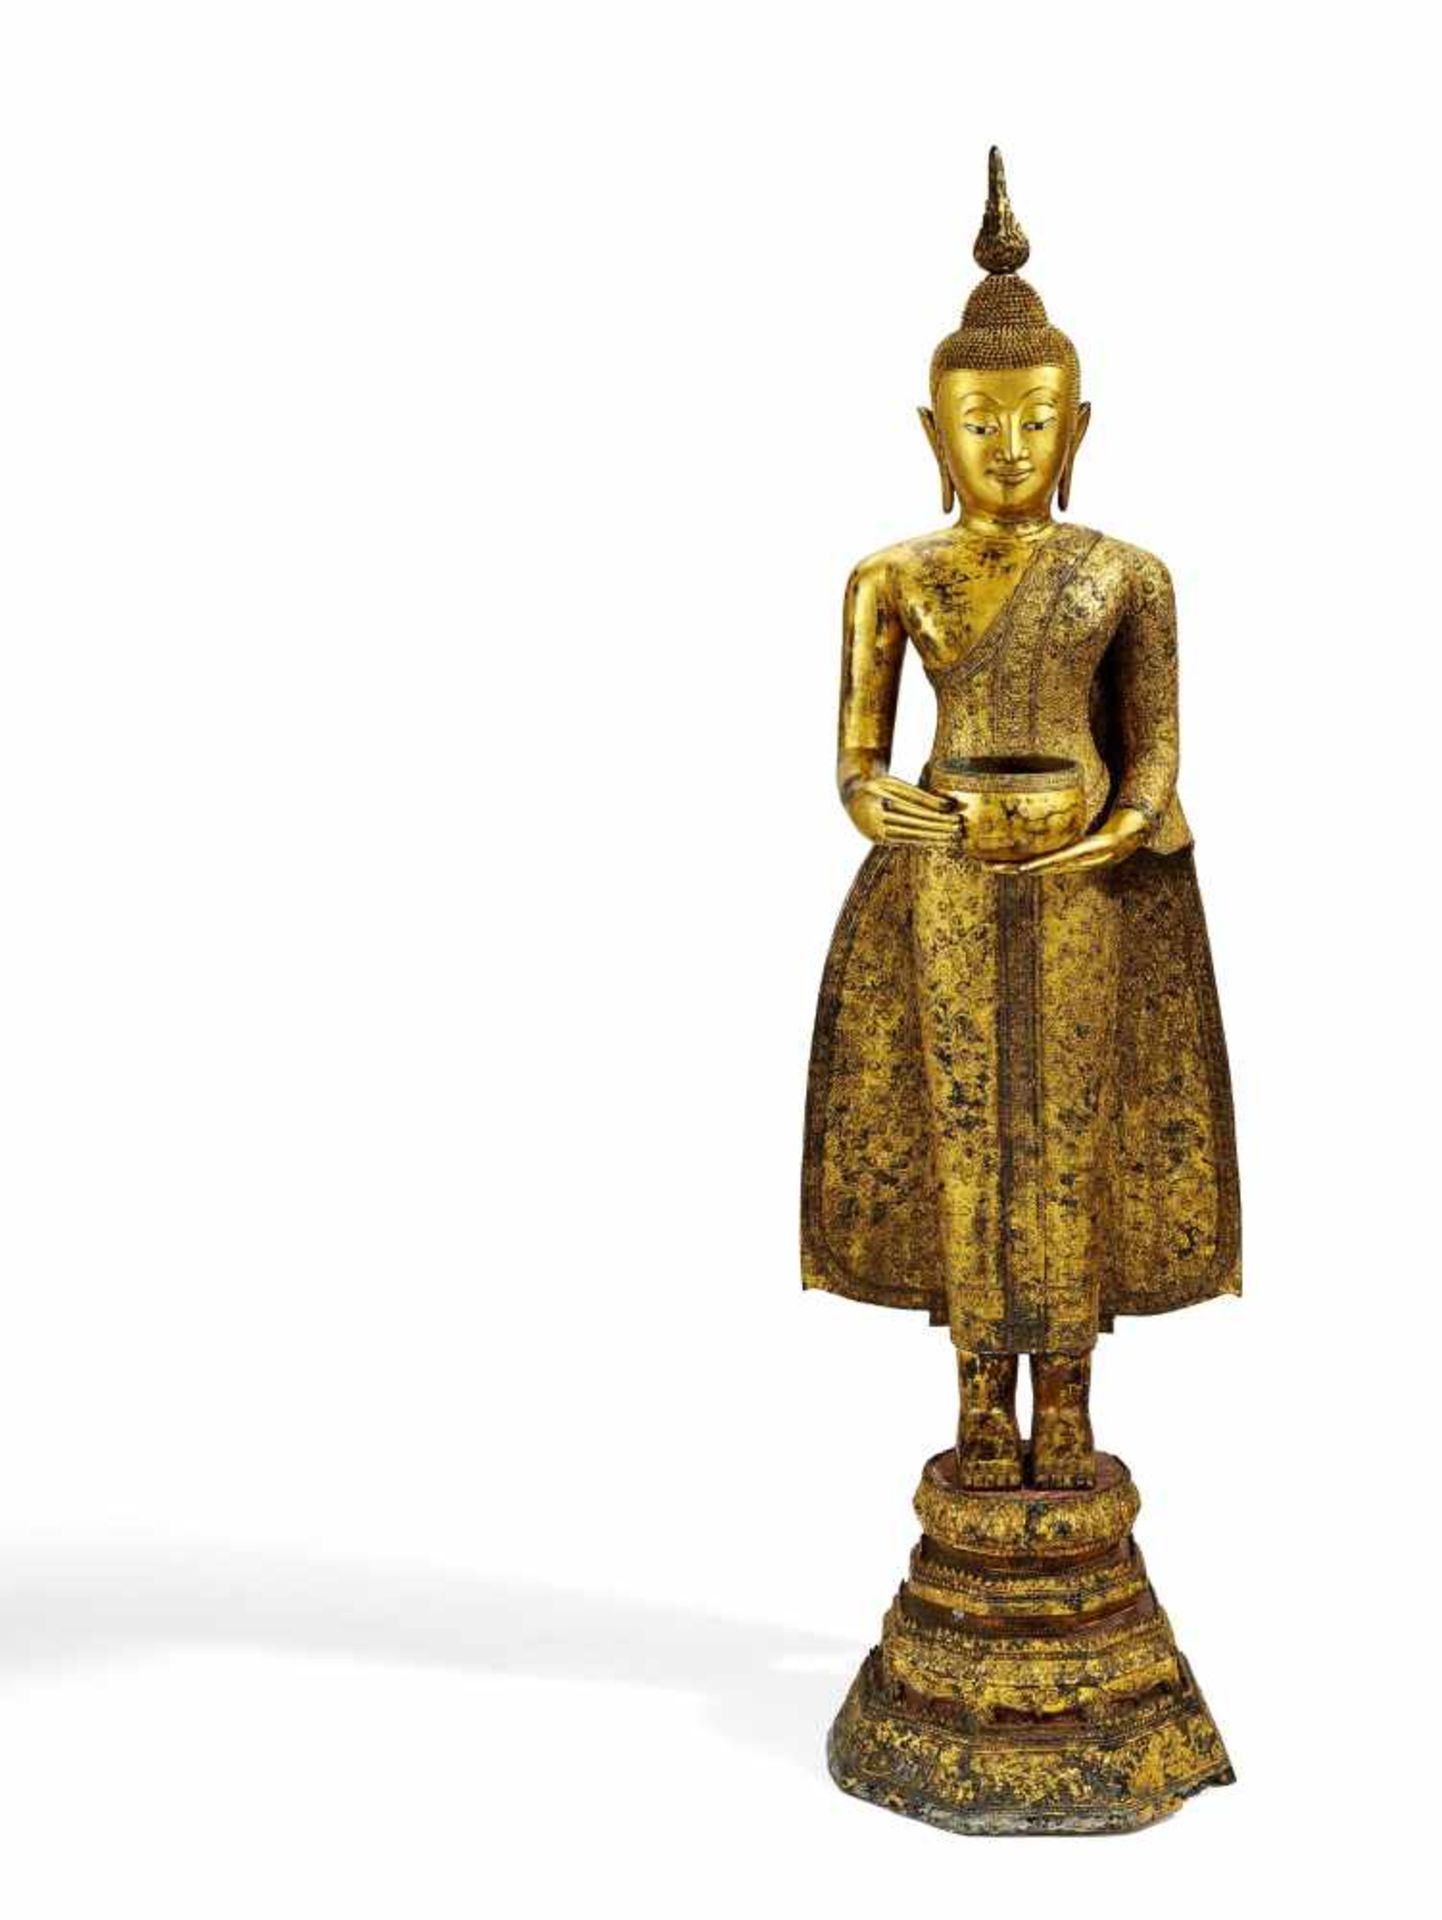 GROSSER STEHENDER BUDDHA MIT ALMOSENSCHALE. Thailand. Rattanakosin-Zeit. 19. Jh. Bronze mit